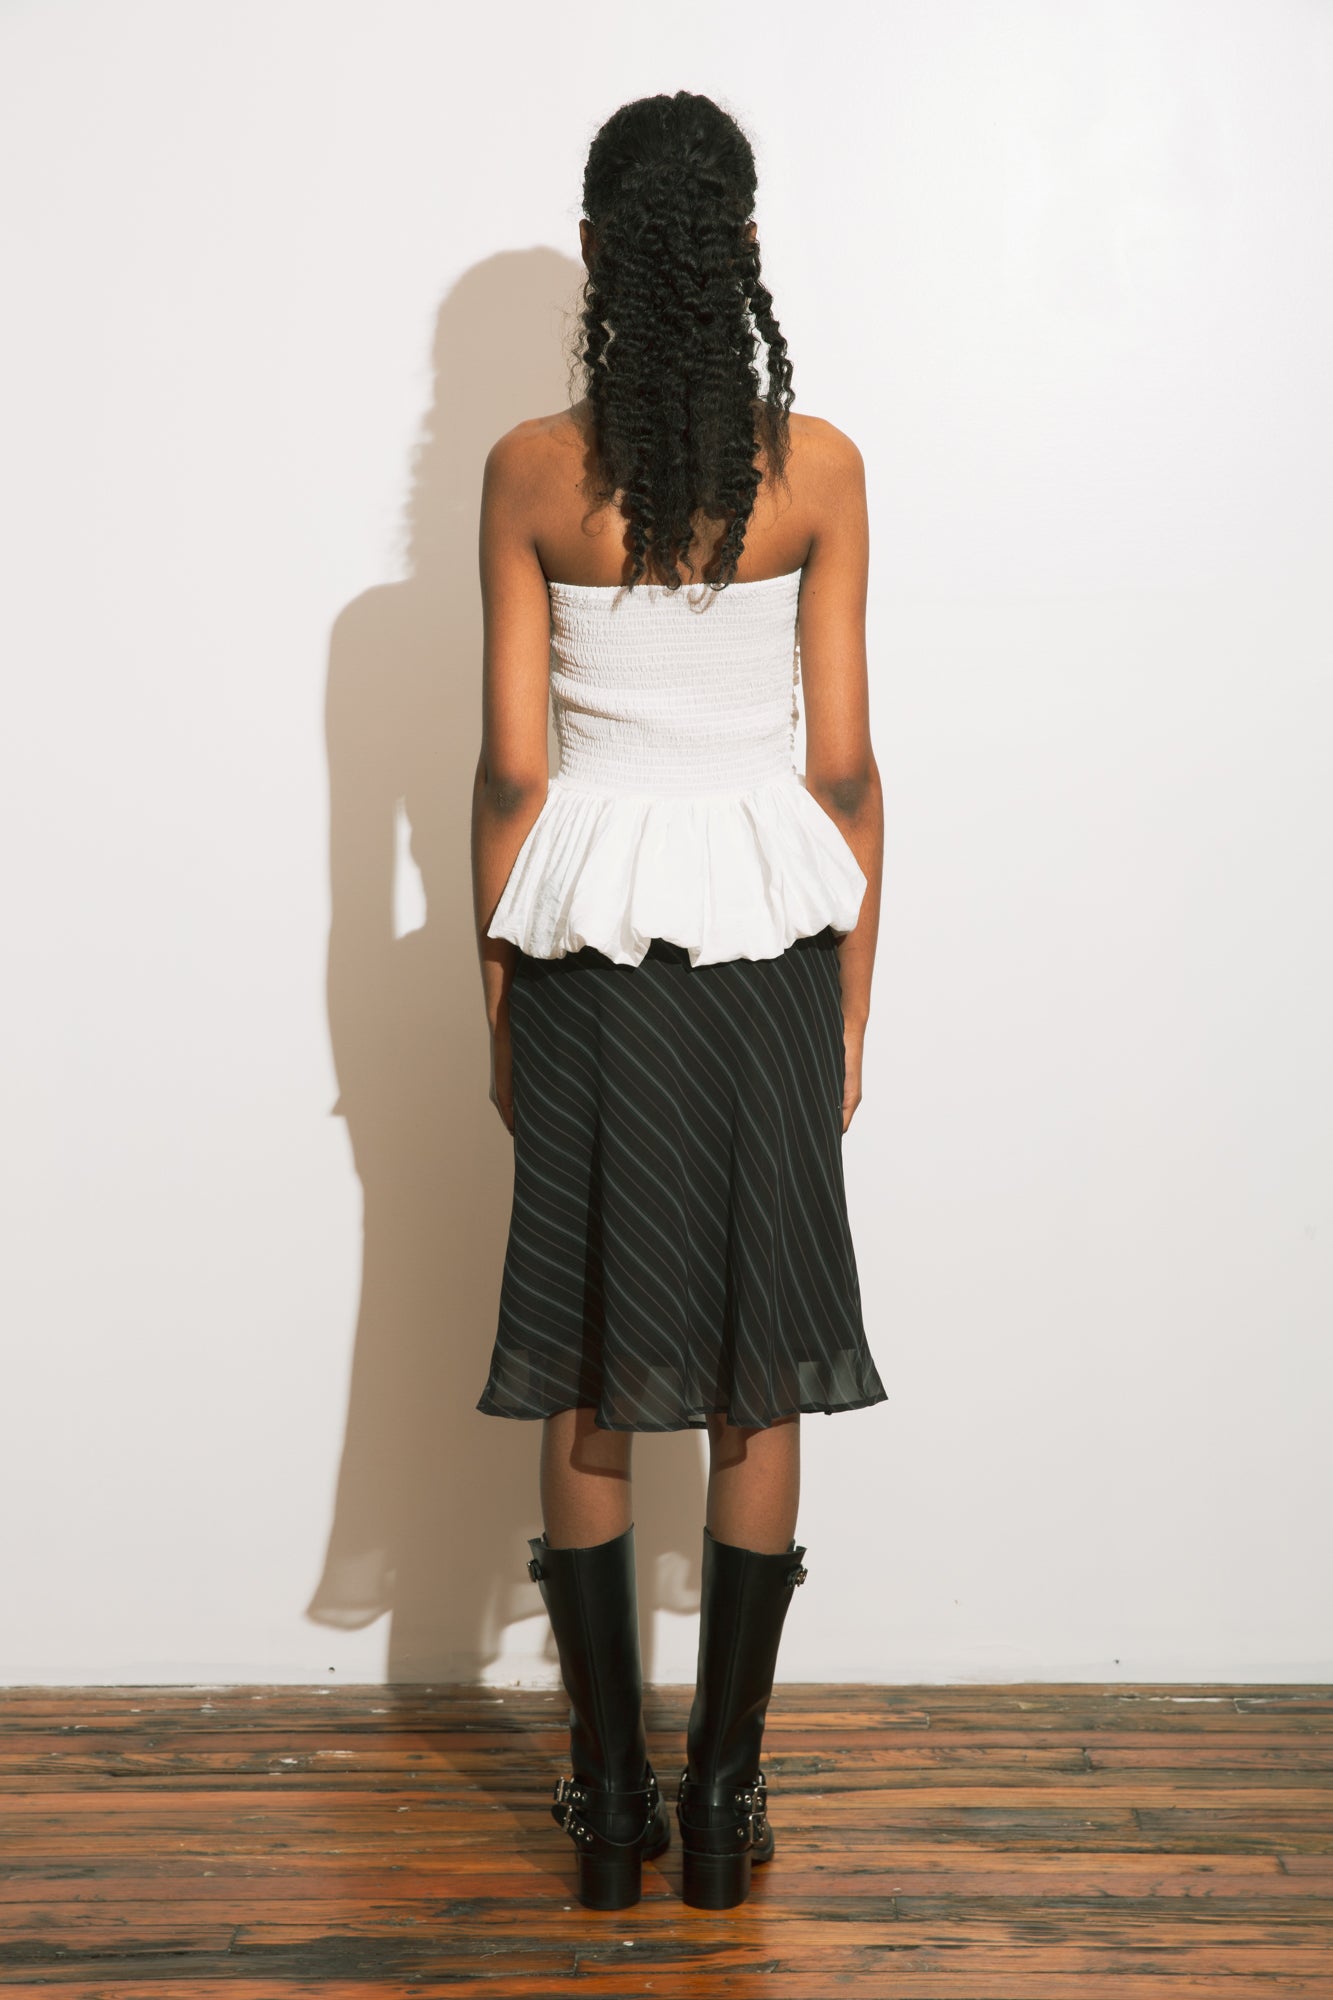 Mino - Skirt